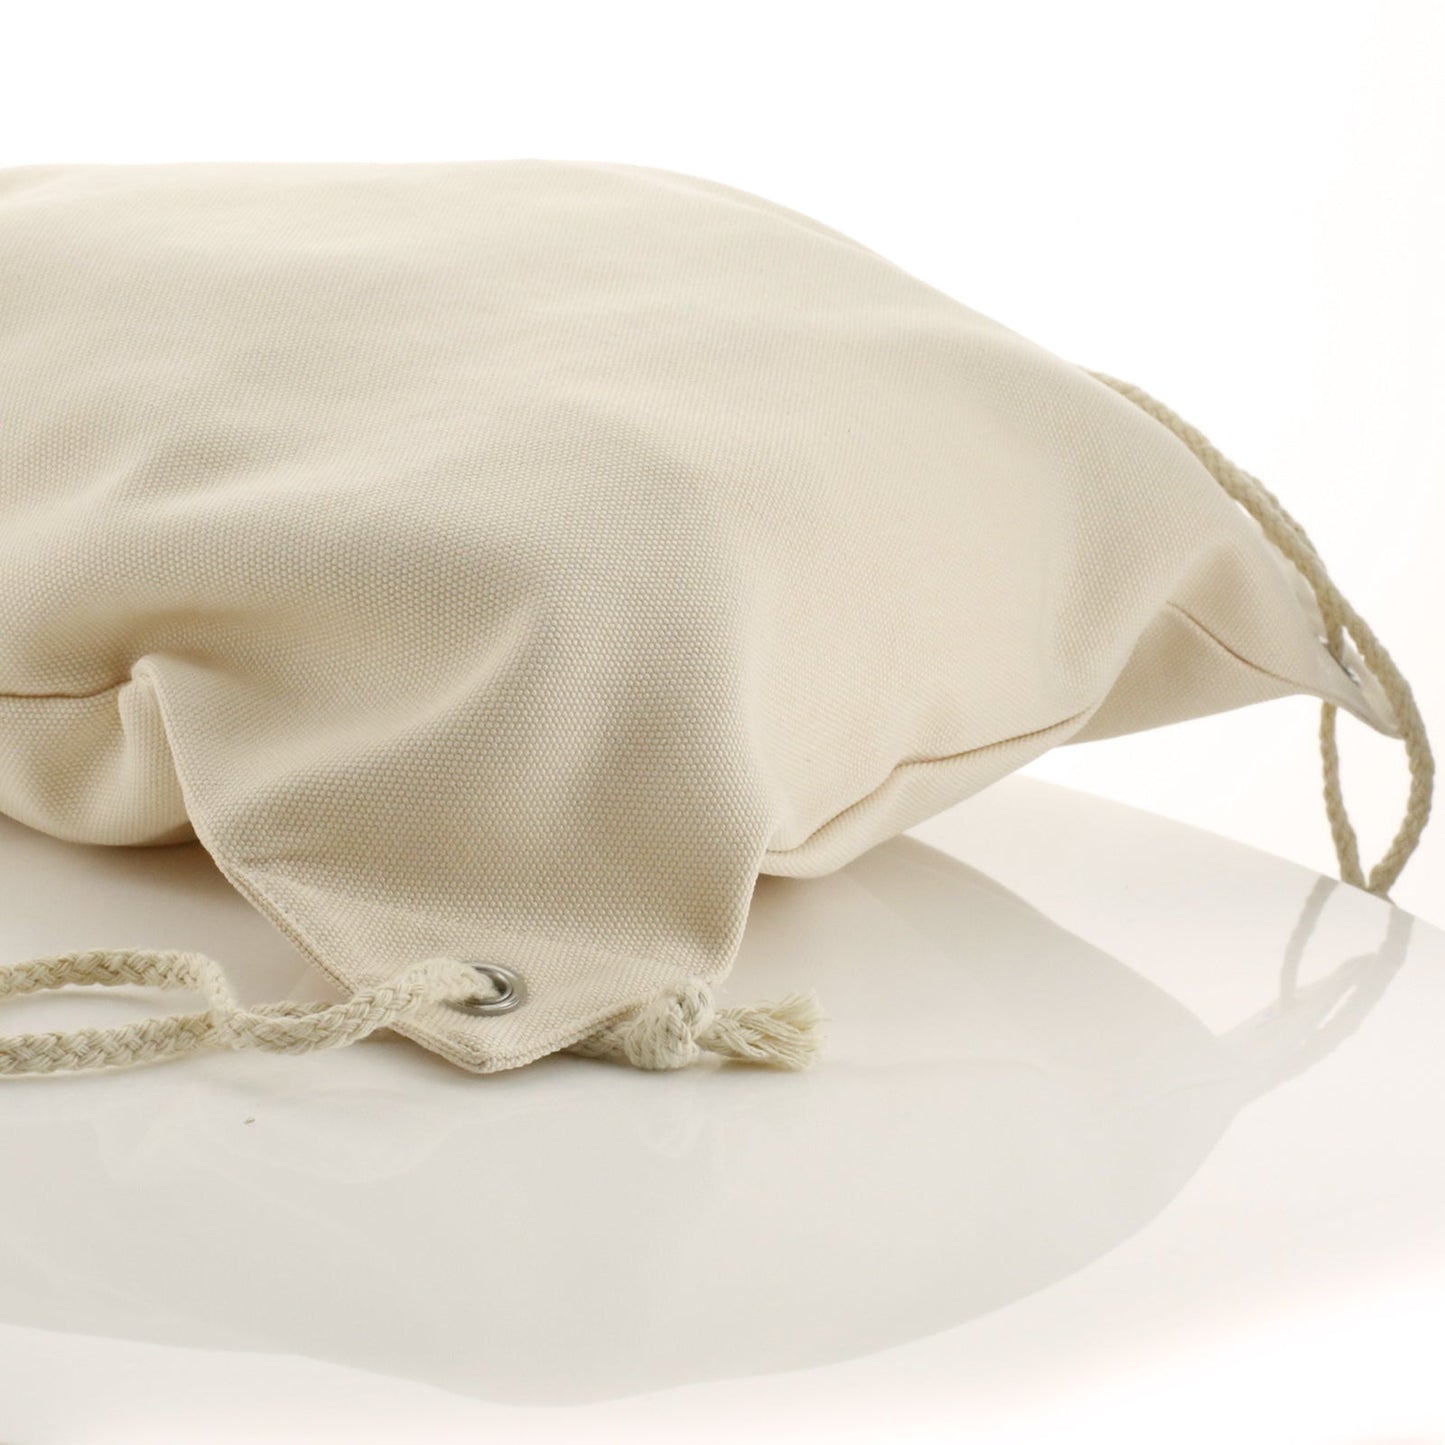 Personalisierter Rucksack mit Kordelzug aus Segeltuch mit Begrüßungstext und umarmenden Nilpferden für Mama und Baby